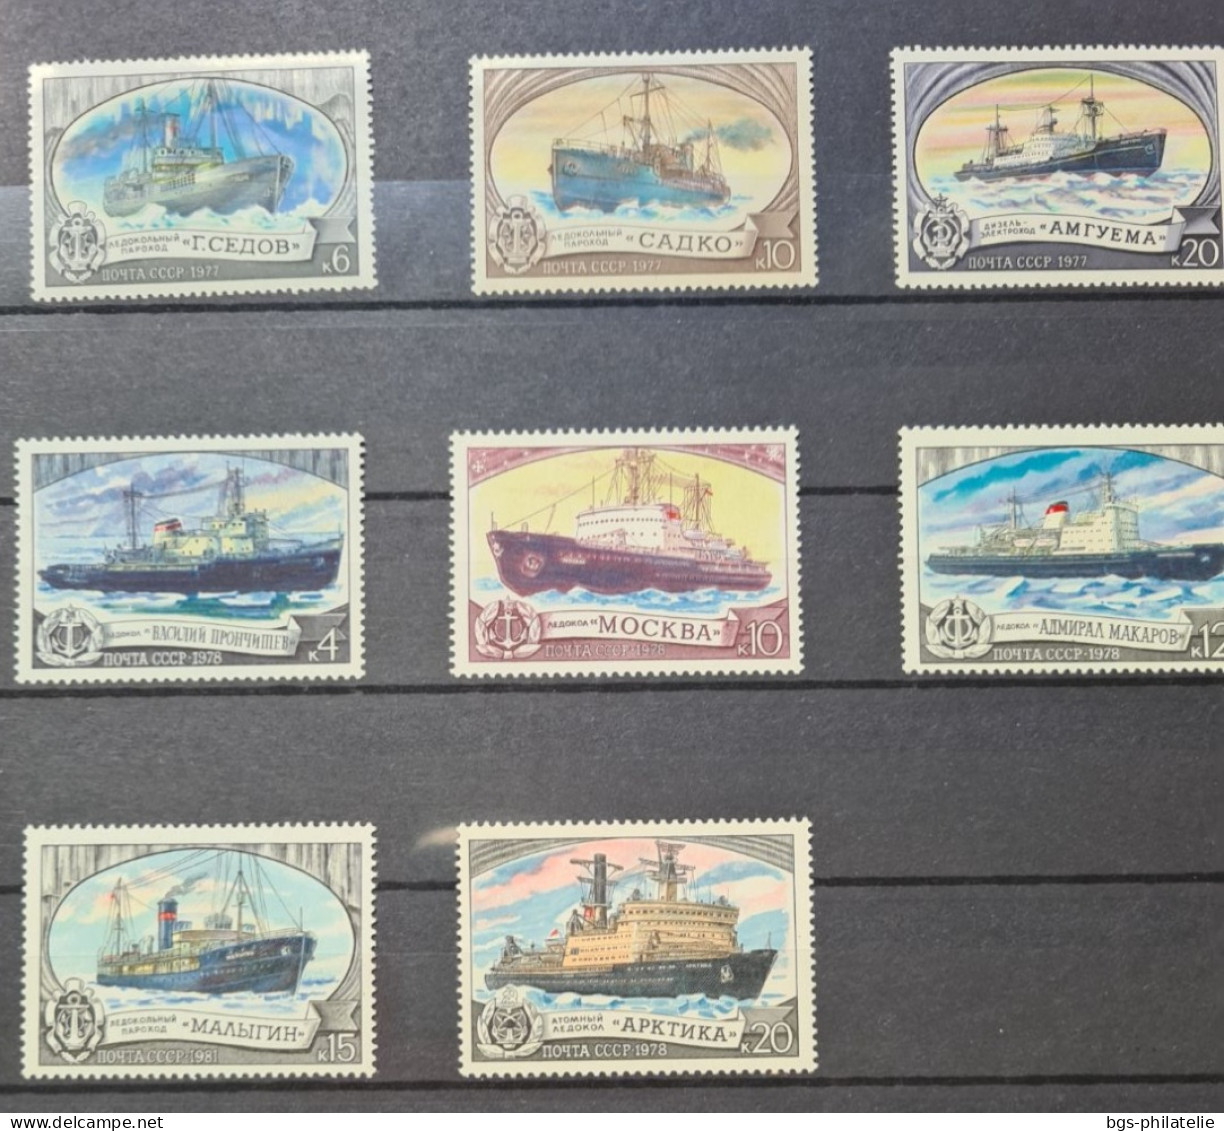 Collection de timbres sur le thème Amérique du Sud,  polaire.